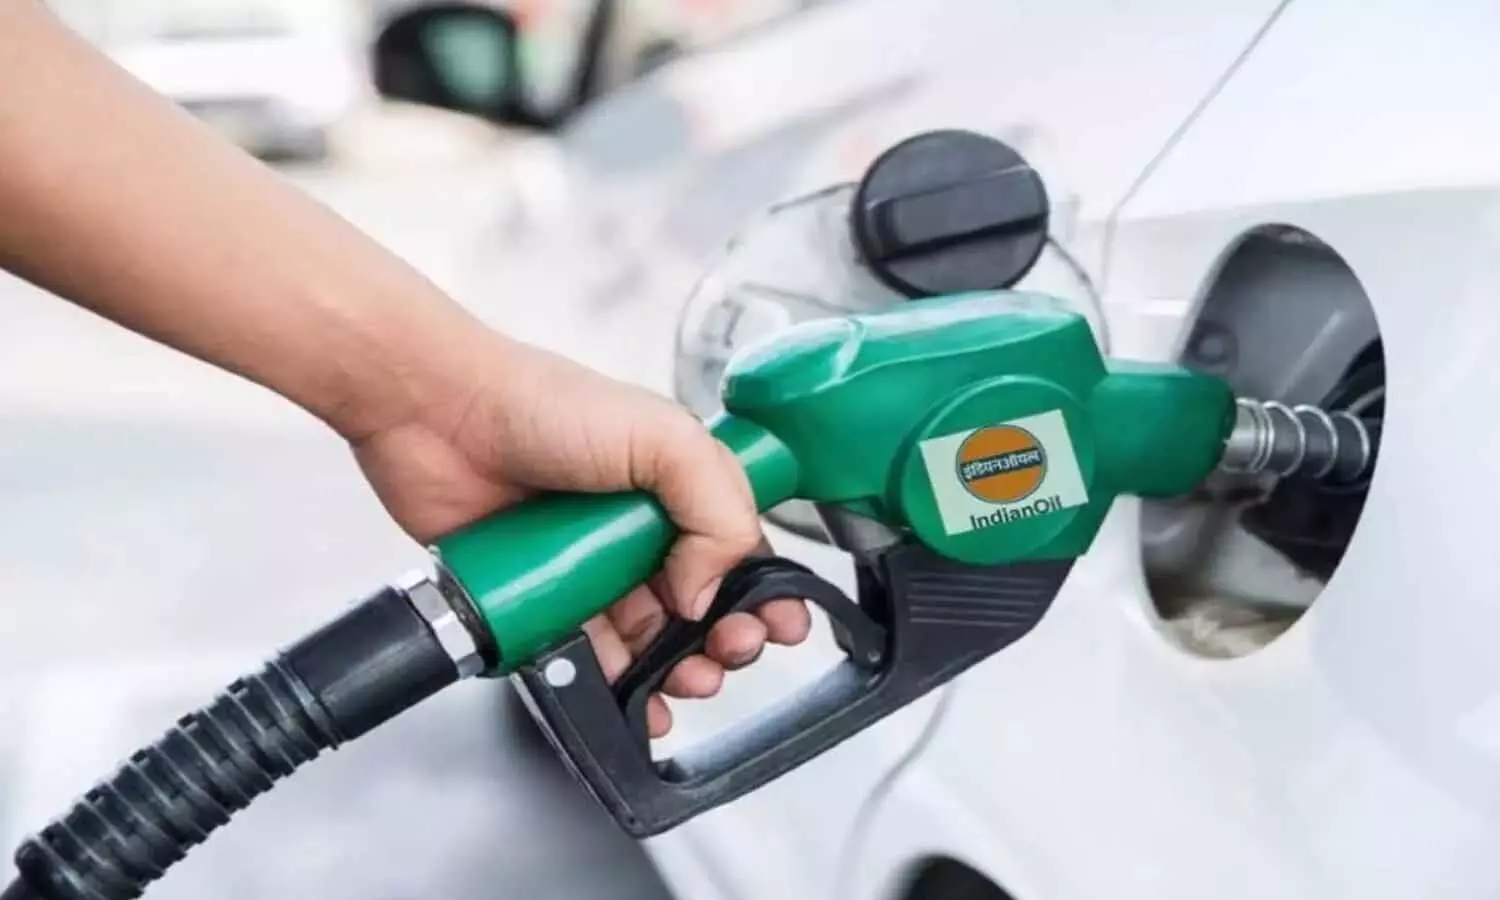 Petrol-Diesel Aaj ka Rate: सरकारी तेल कंपनियों ने जारी किए पेट्रोल-डीजल के नए रेट, जानिए कितनी हैं आज की कीमतें